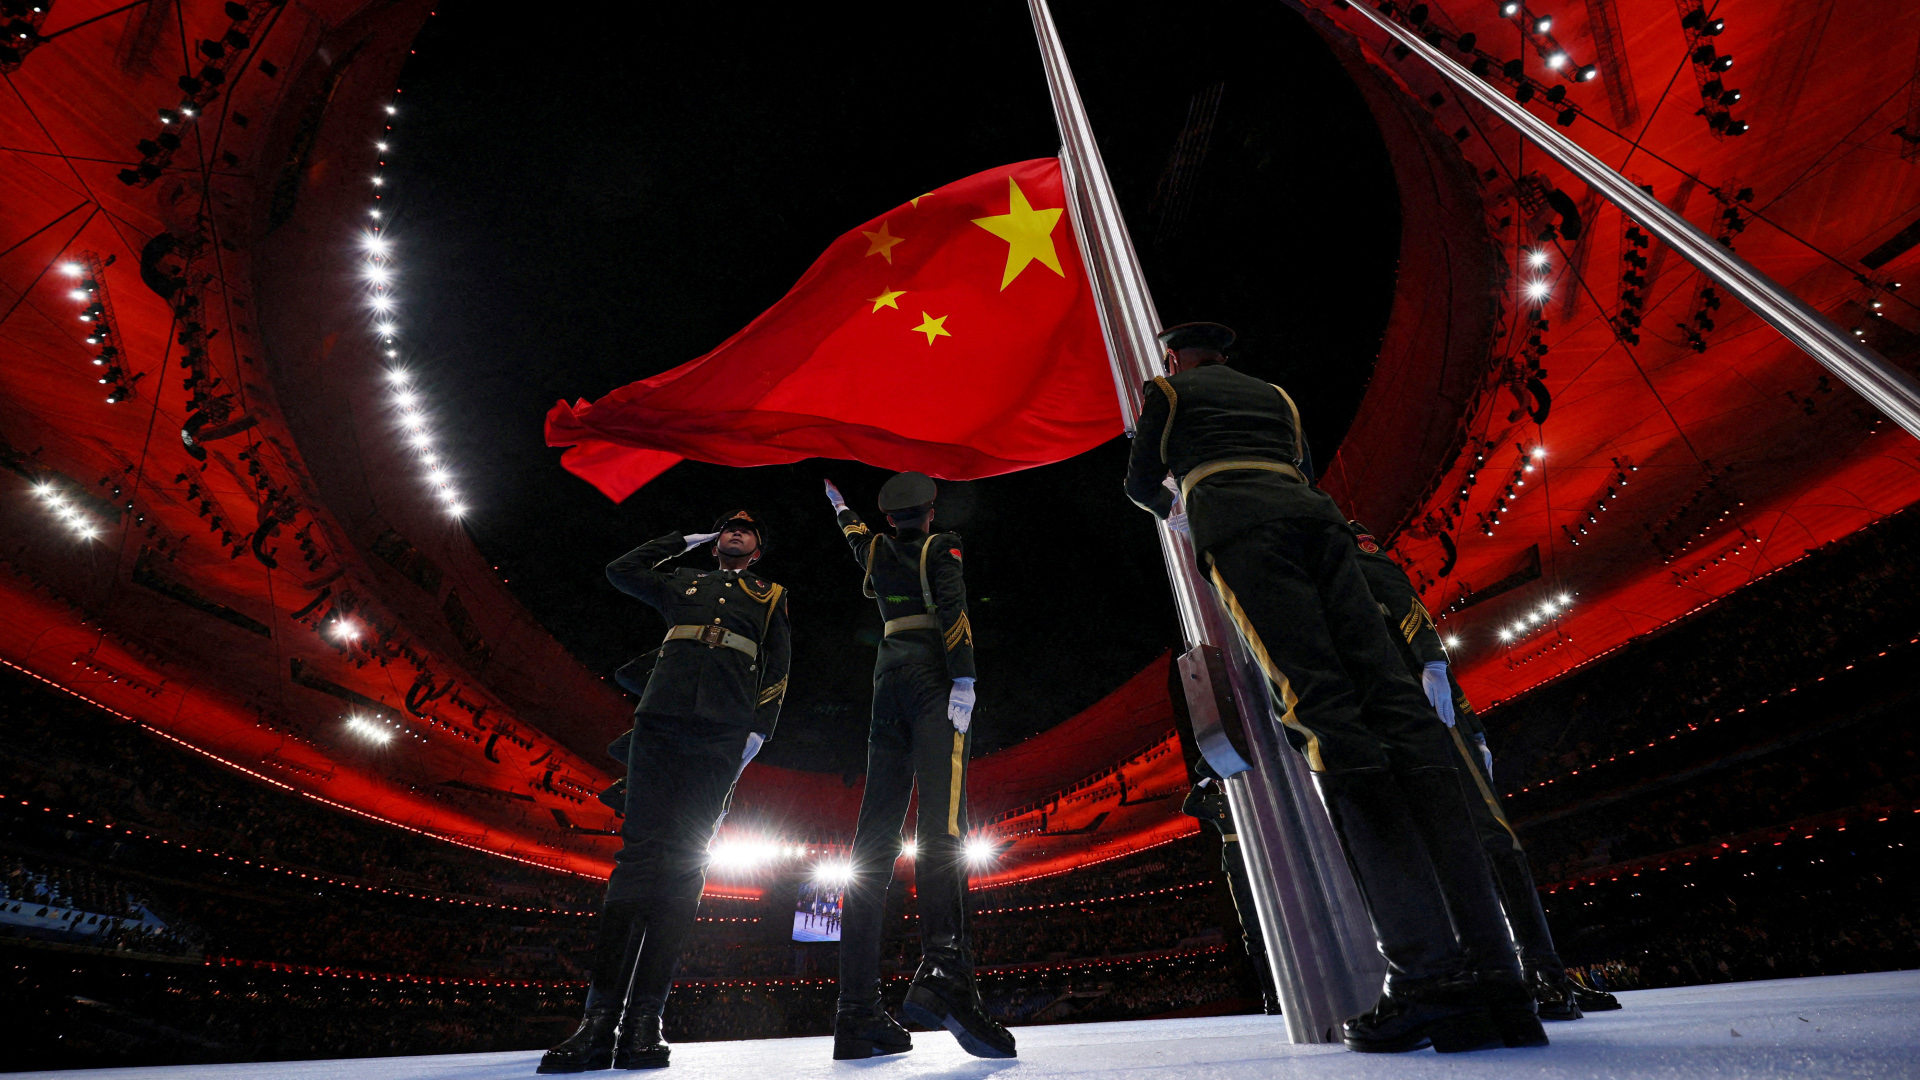 Soldaten hissen die chinesische Flagge bei einer Zeremonie während der Olympischen Winterspiele | REUTERS